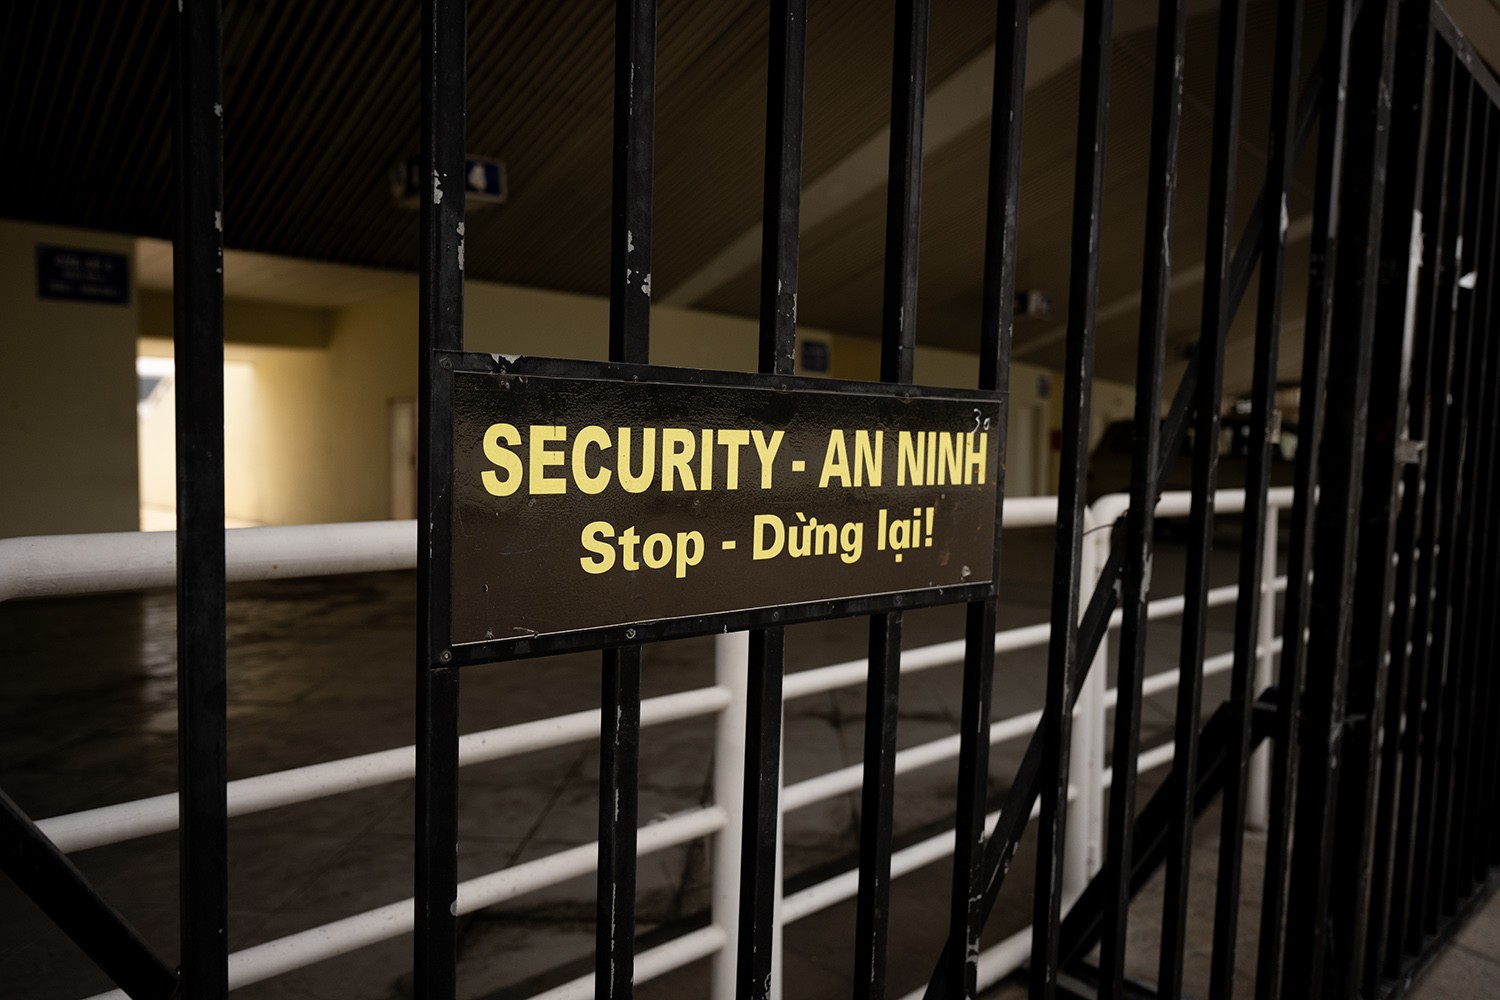 Hàng rào an ninh xung quanh sân cũng đã được bố trí để đảm bảo an ninh tốt nhất